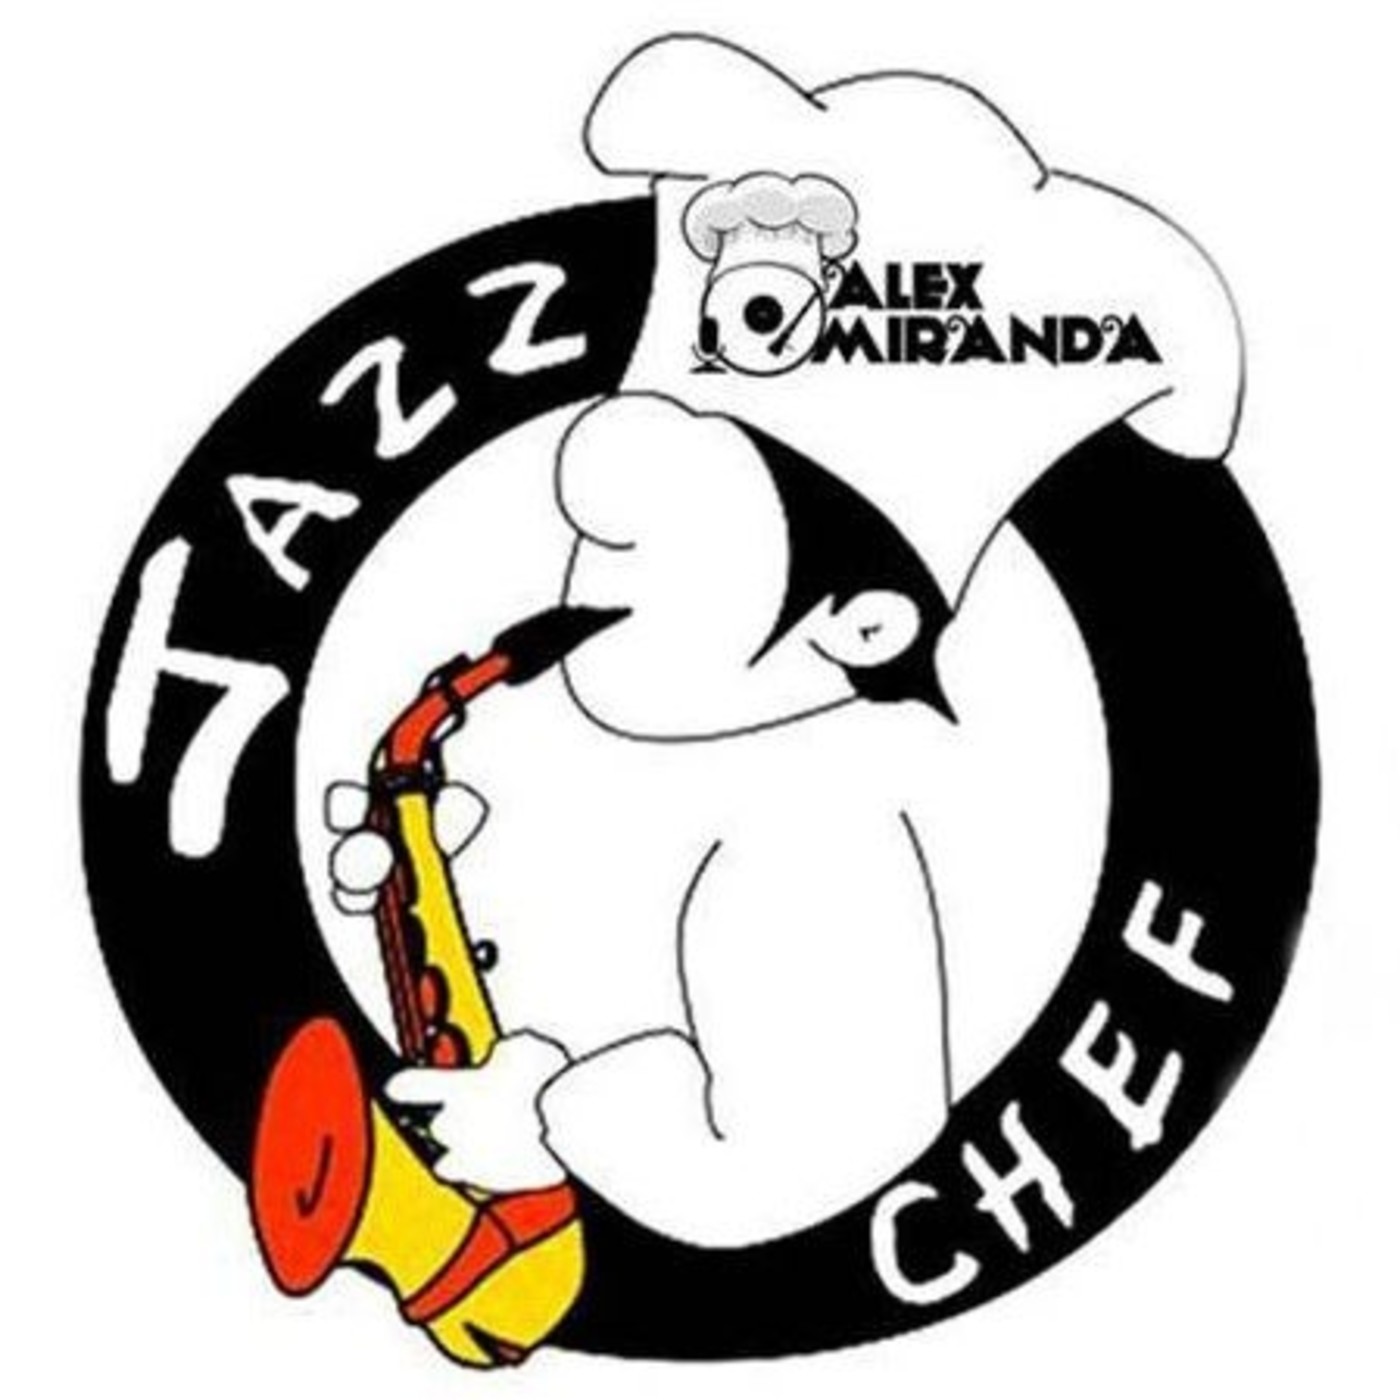 2018/03/11 - A la sazón del Jazz